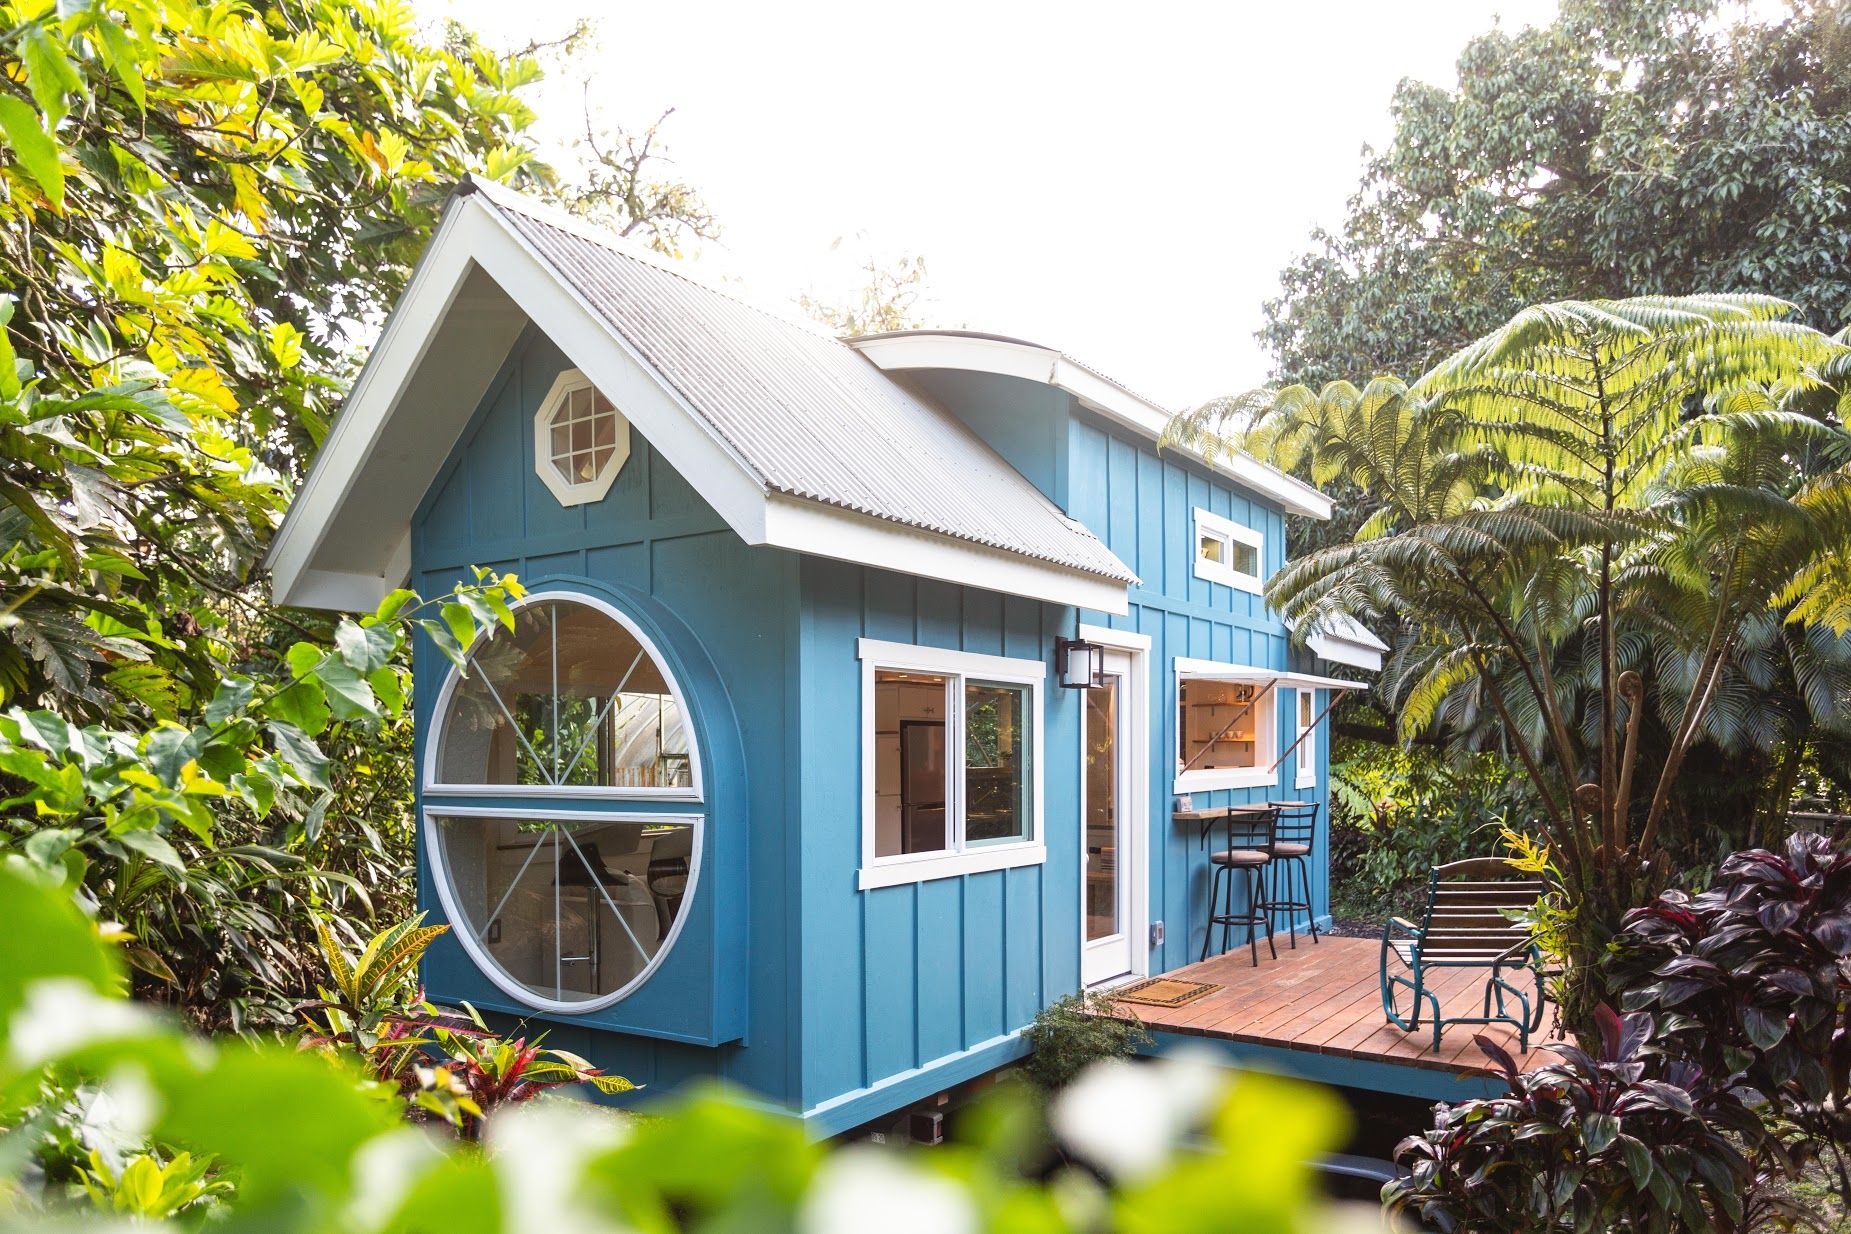 Với diện tích gói gọn trong 24m², sơn ngoại thất màu xanh lam tuyệt đẹp khiến bạn dễ dàng liên tưởng đến ngôi nhà trong những câu chuyện cổ tích. Màu xanh yên bình, nhẹ nhàng nổi bật giữa khu vườn rộng lớn thật nên thơ vô cùng.